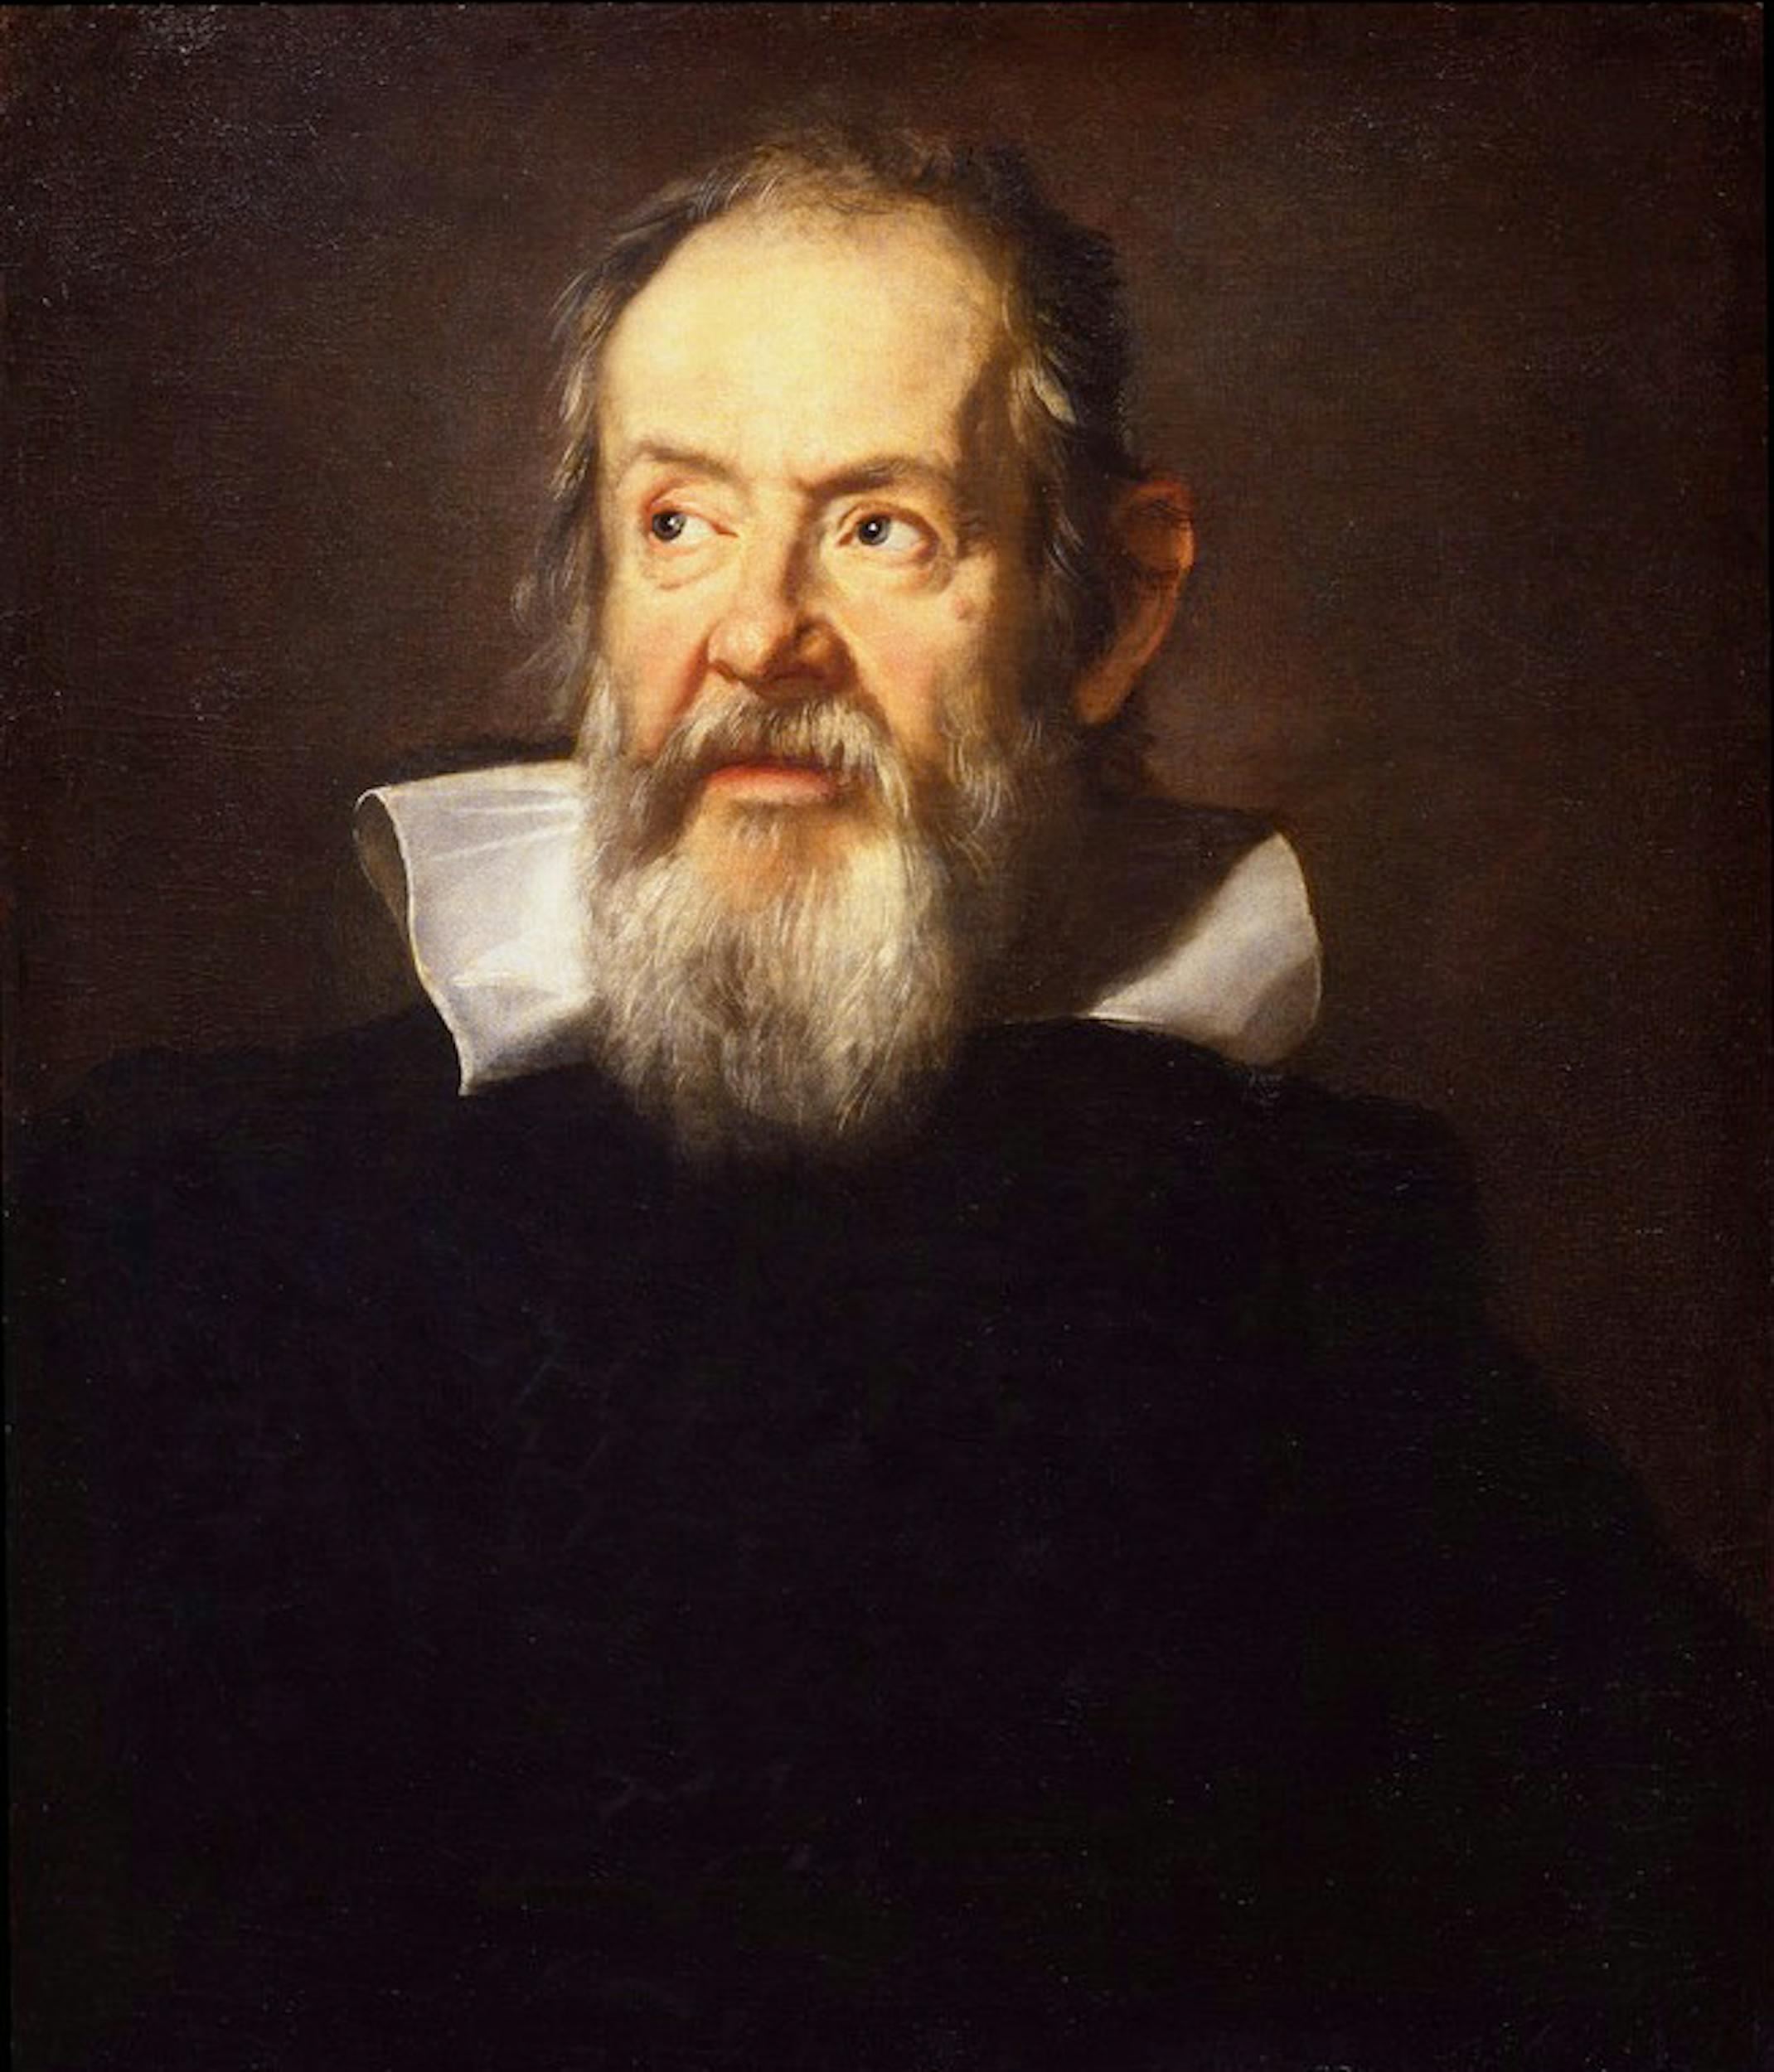 Justus Suttermans (Anversa, Belgio 1597 - Firenze 1681), Ritratto di Galileo Galilei, 1636, olio  su tela. Firenze, Galleria degli Uffizi